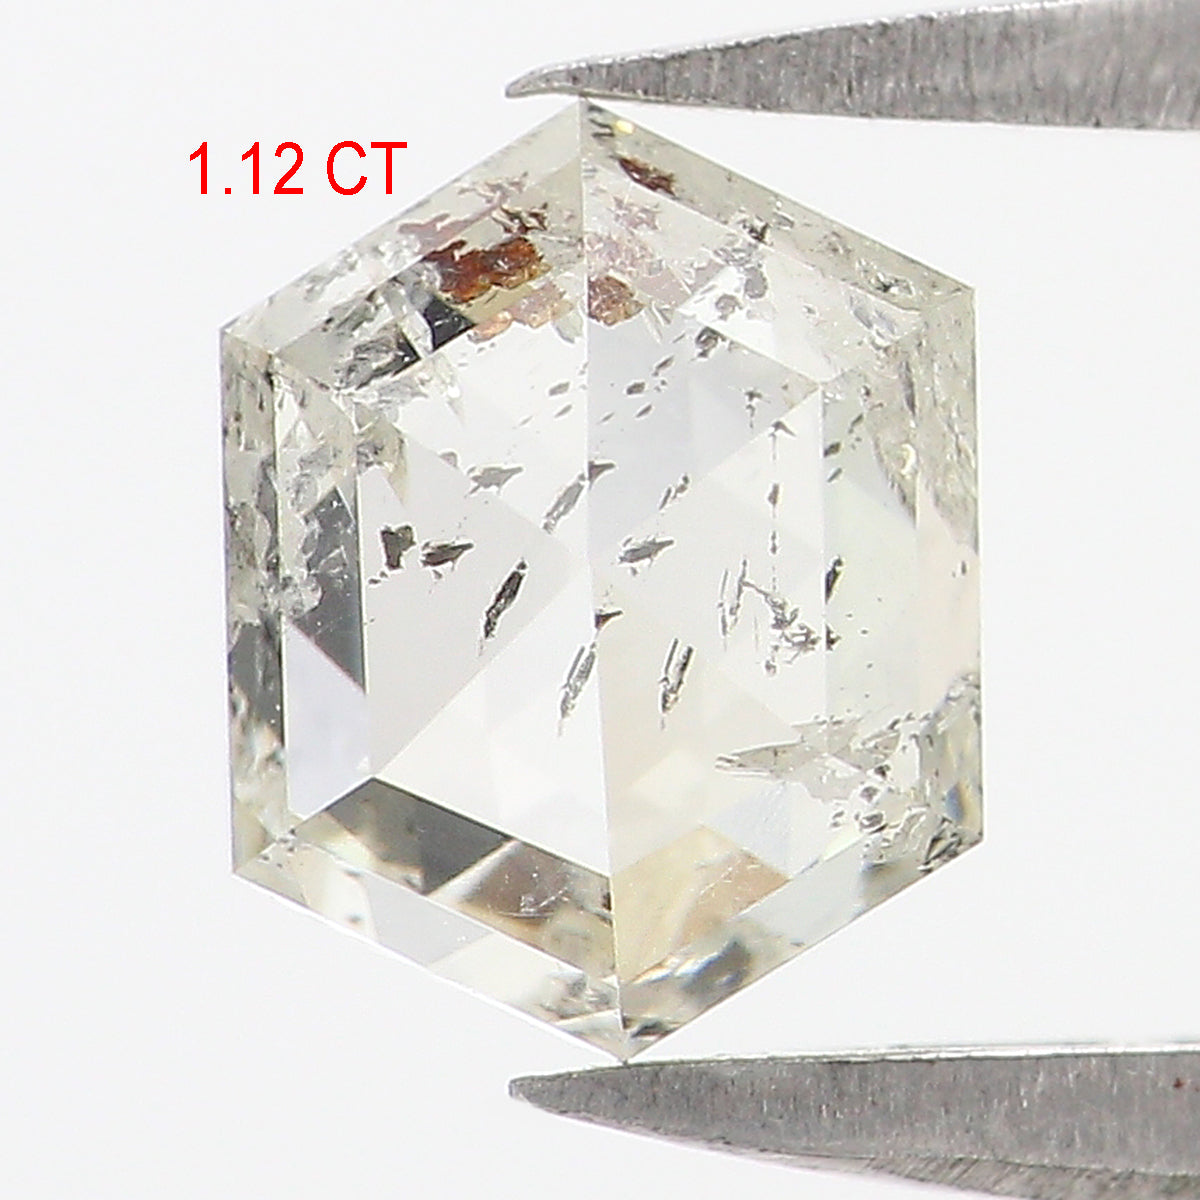 1.12 CT Natural Loose Hexagon Shape Diamond White - J Hexagon Diamond 6.85 MM Natural Loose White - J Color Hexagon Rose Cut Diamond QL2683